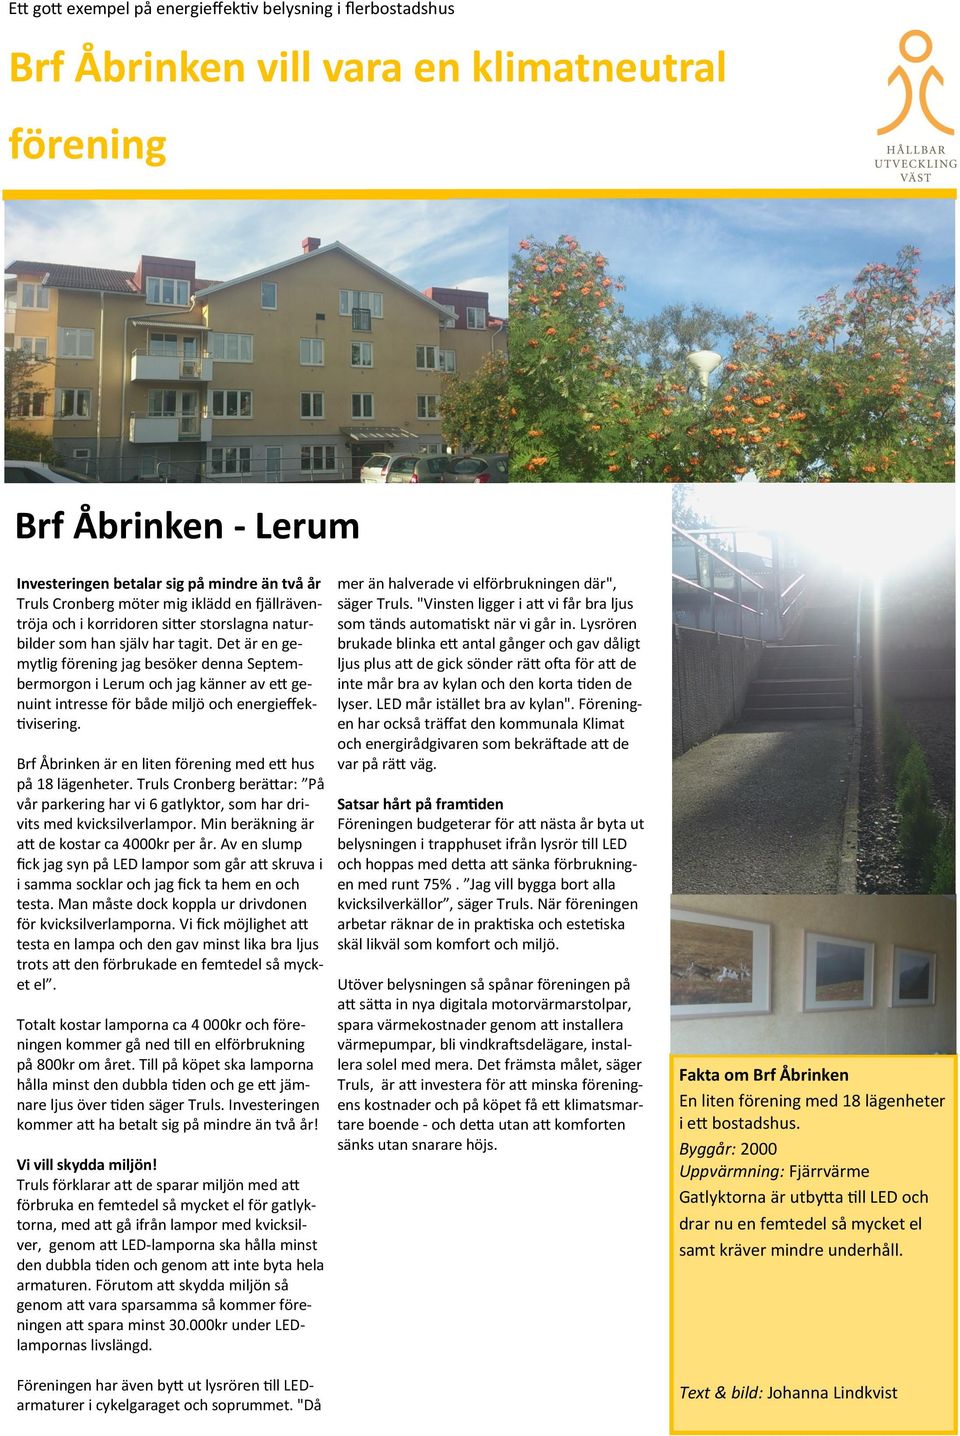 Brf Åbrinken är en liten förening med ett hus på 18 lägenheter. Truls Cronberg berättar: På vår parkering har vi 6 gatlyktor, som har drivits med kvicksilverlampor.